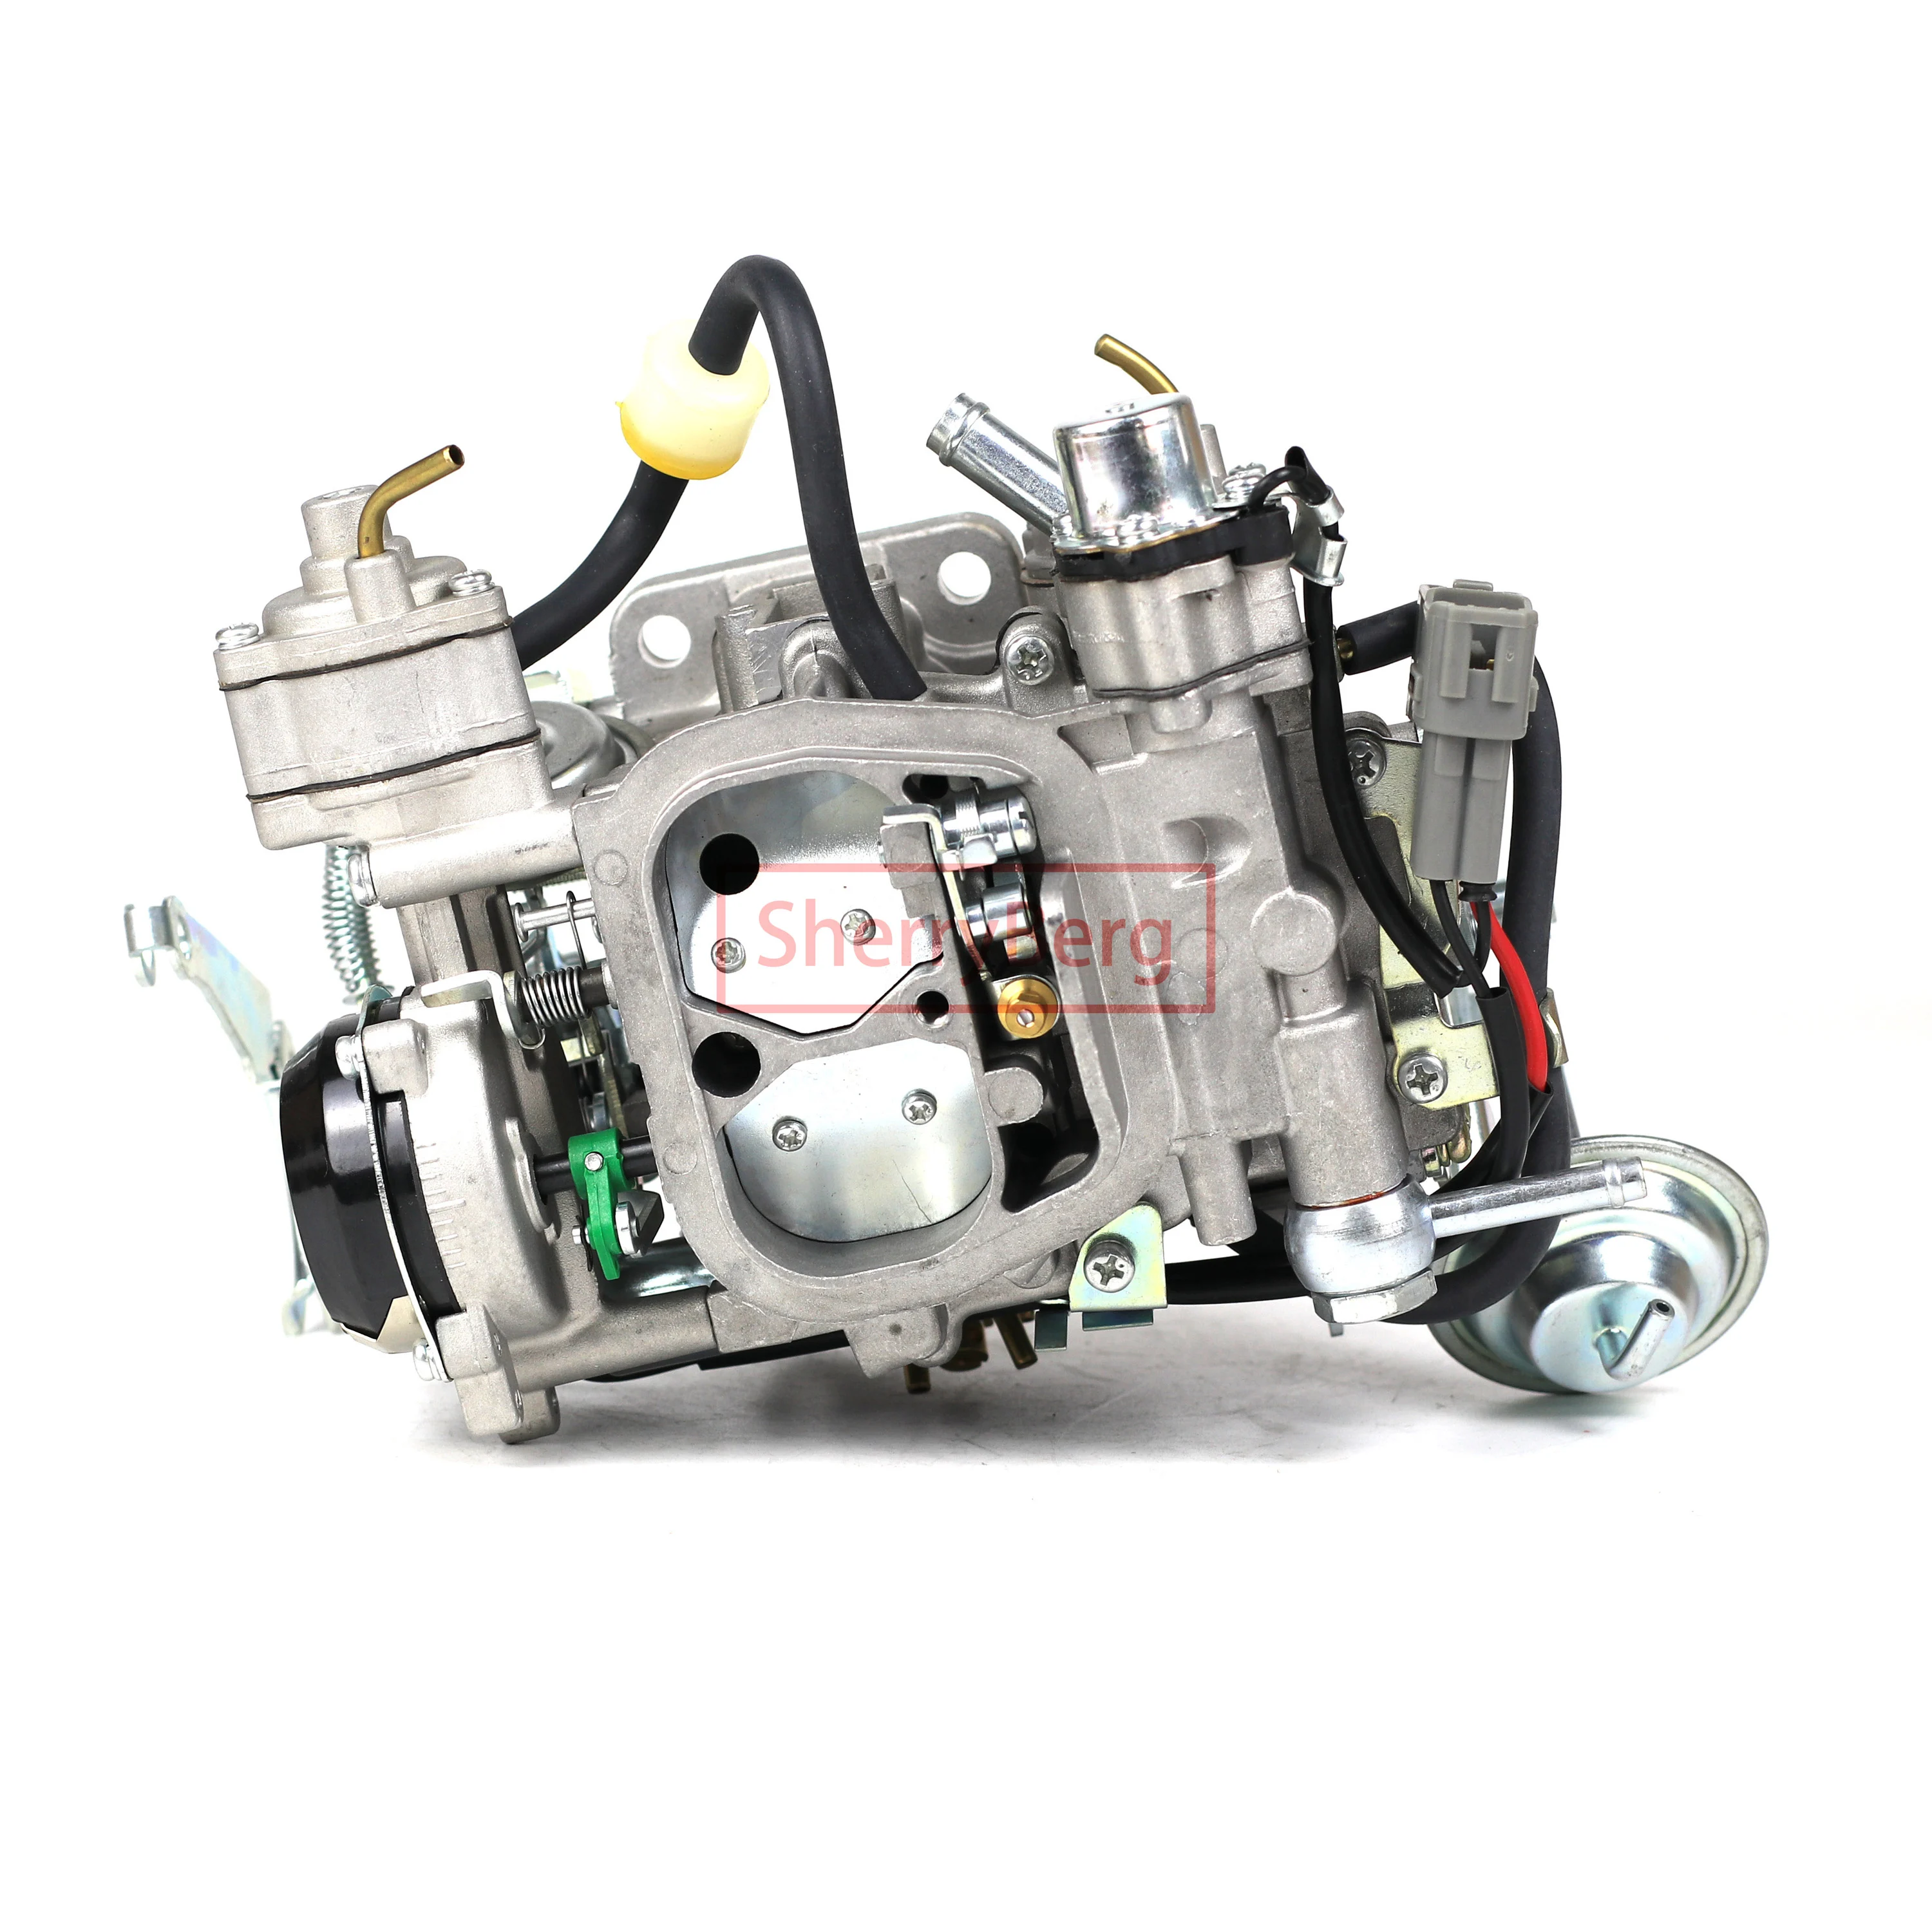 

SherryBerg Carburador Carb Carburettor for Toyota 3rz Engine OEM 21100-75120 CARBURETOR CARBY UPGRADE 3 RZ Carbrador Vergaser